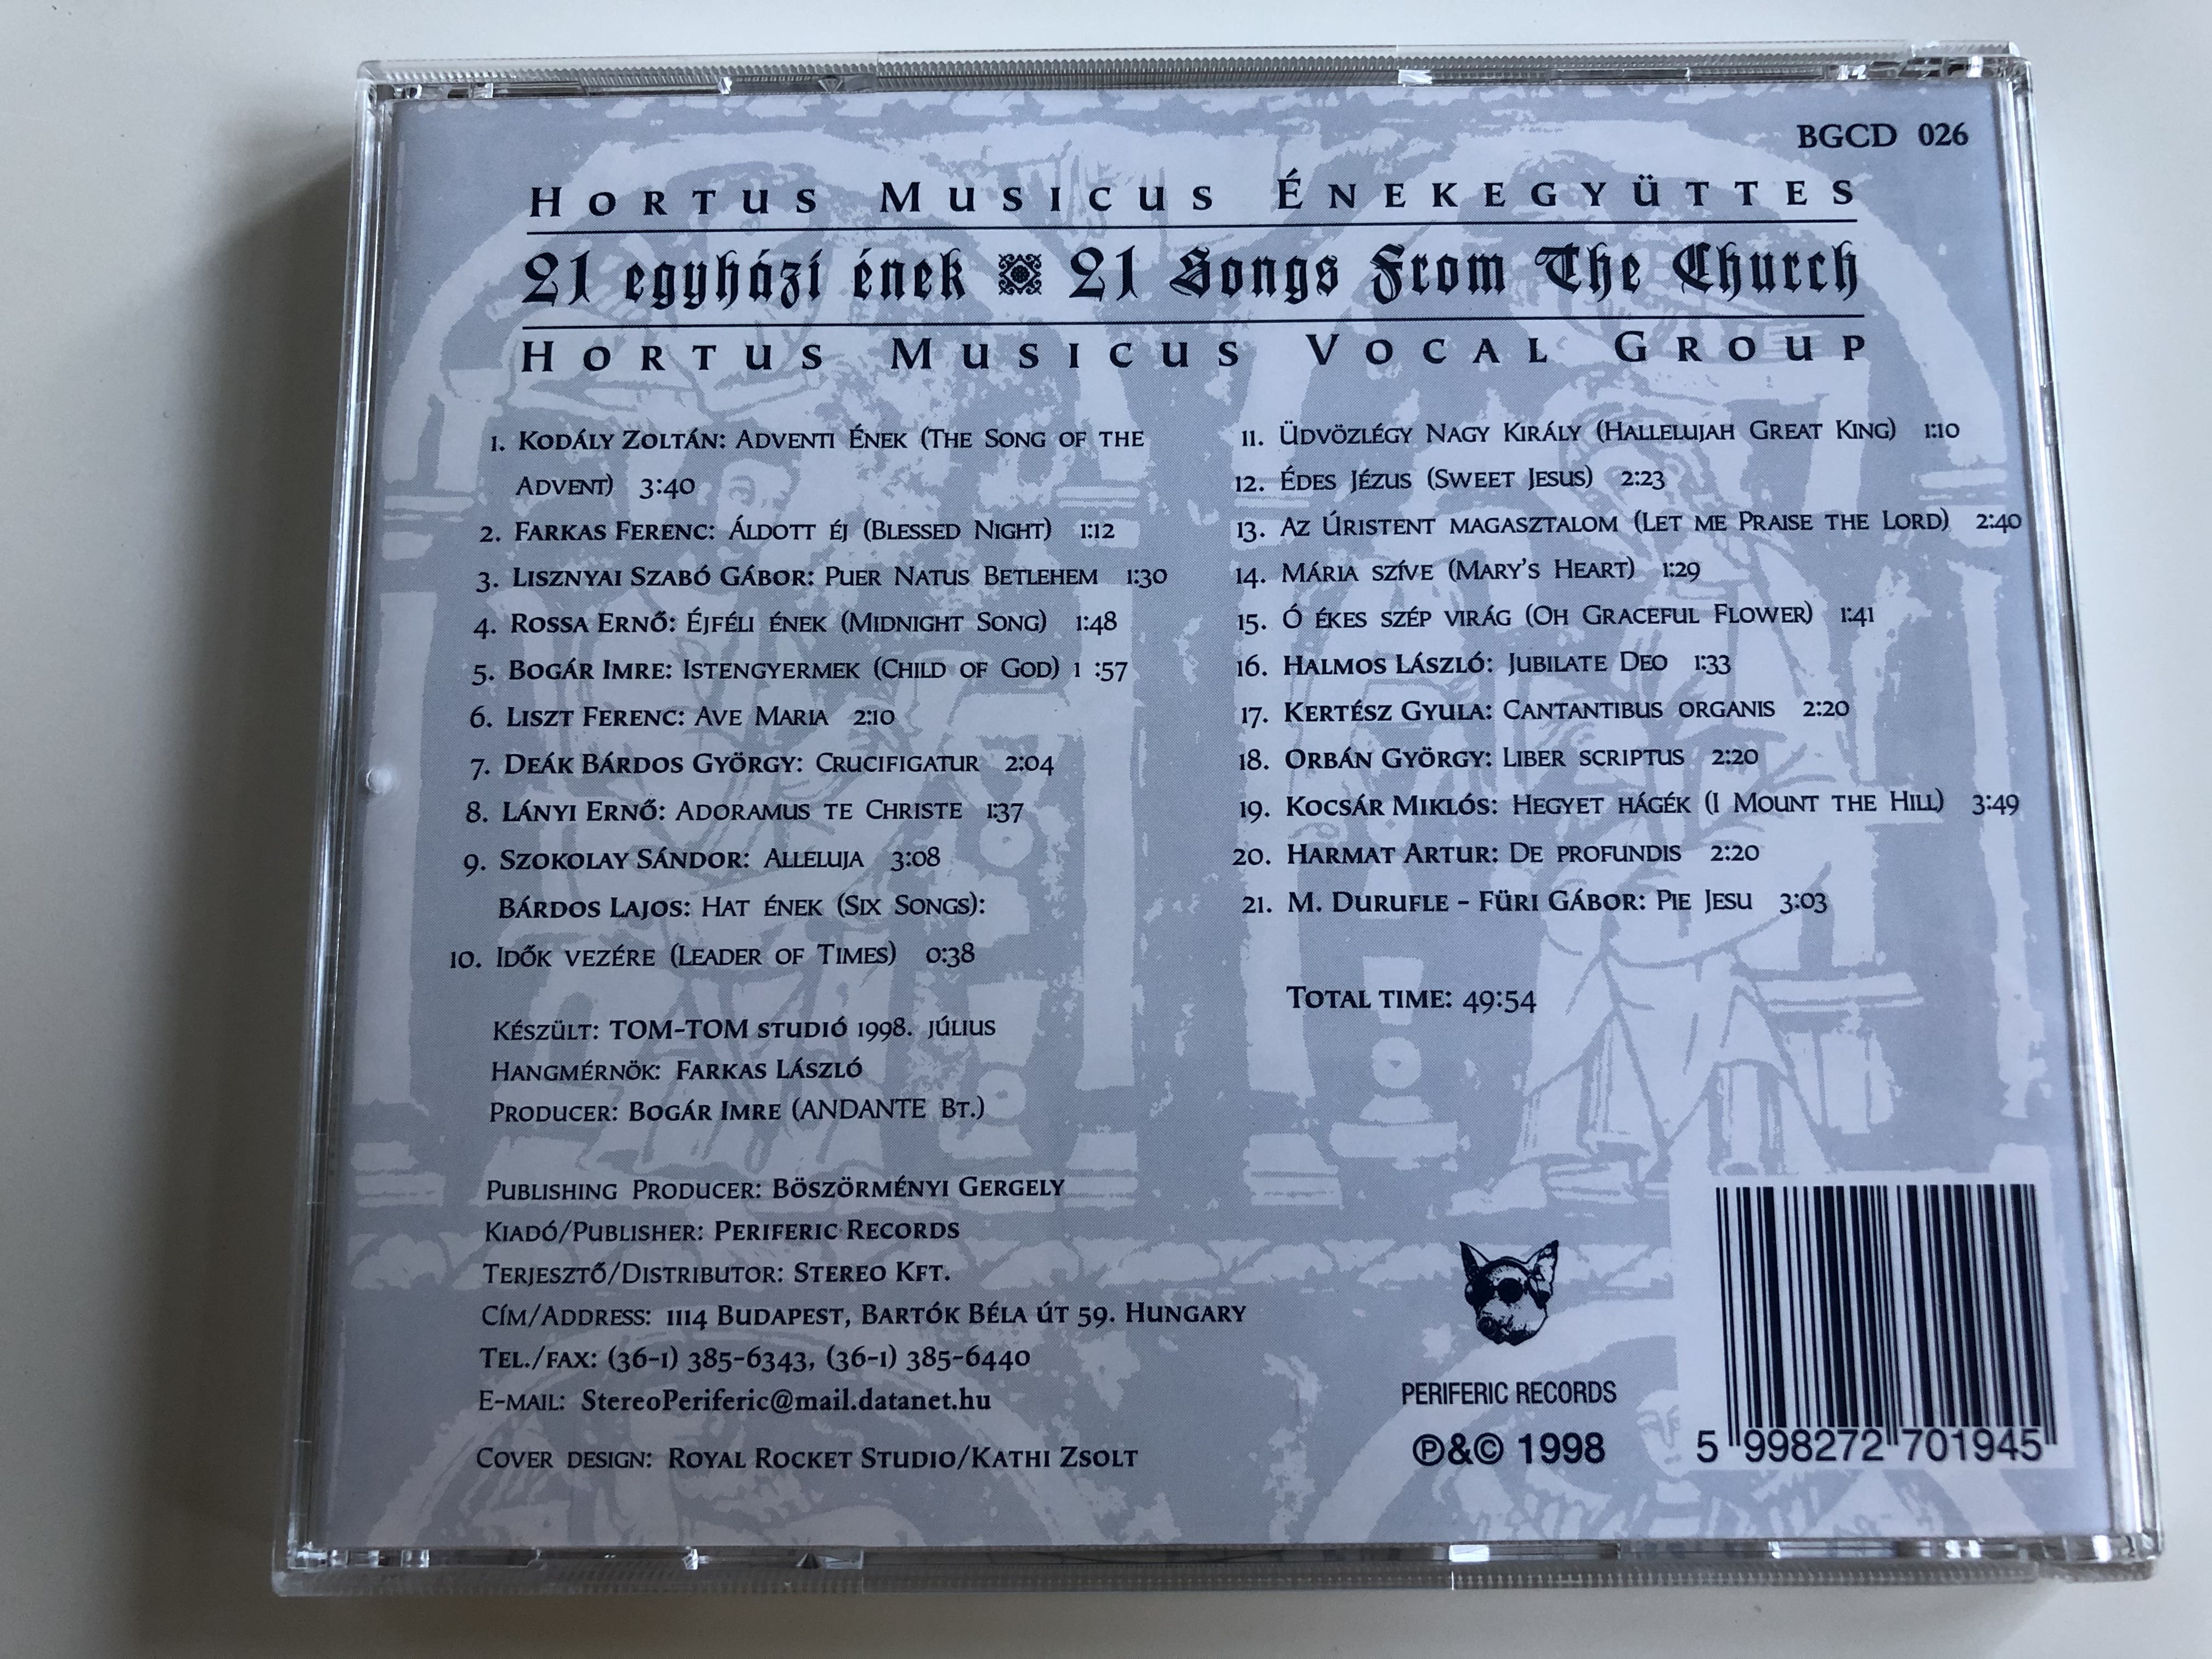 hortus-musicus-21-egyh-zi-nek-21-songs-from-tre-church-audio-cd-1998-bgcd026-6-.jpg